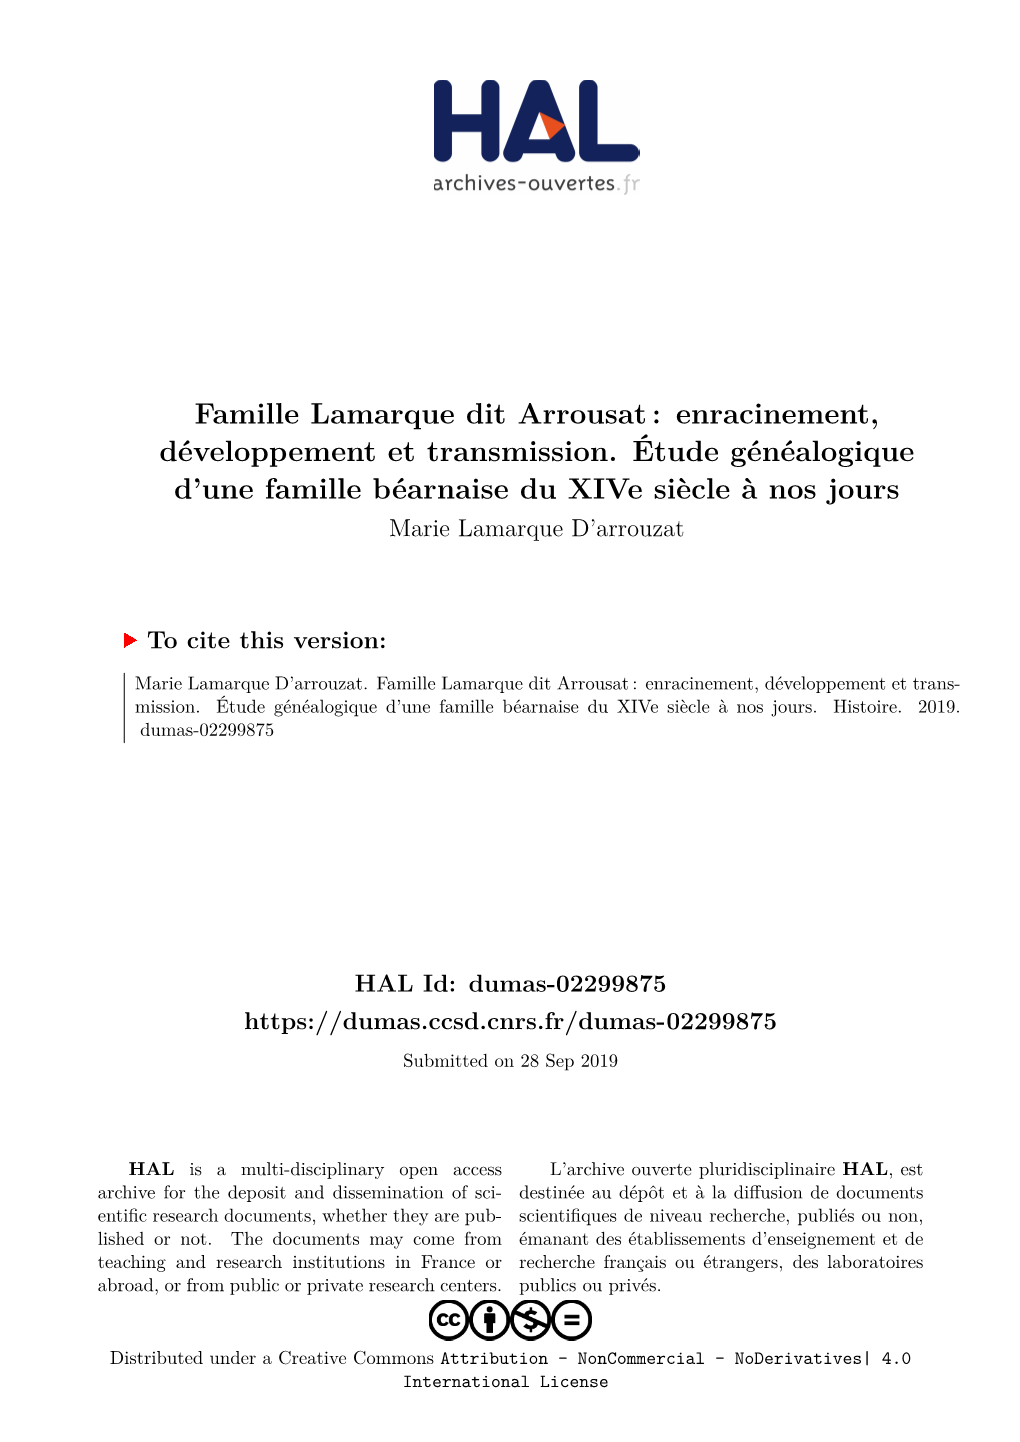 Famille Lamarque Dit Arrousat : Enracinement, Développement Et Transmission